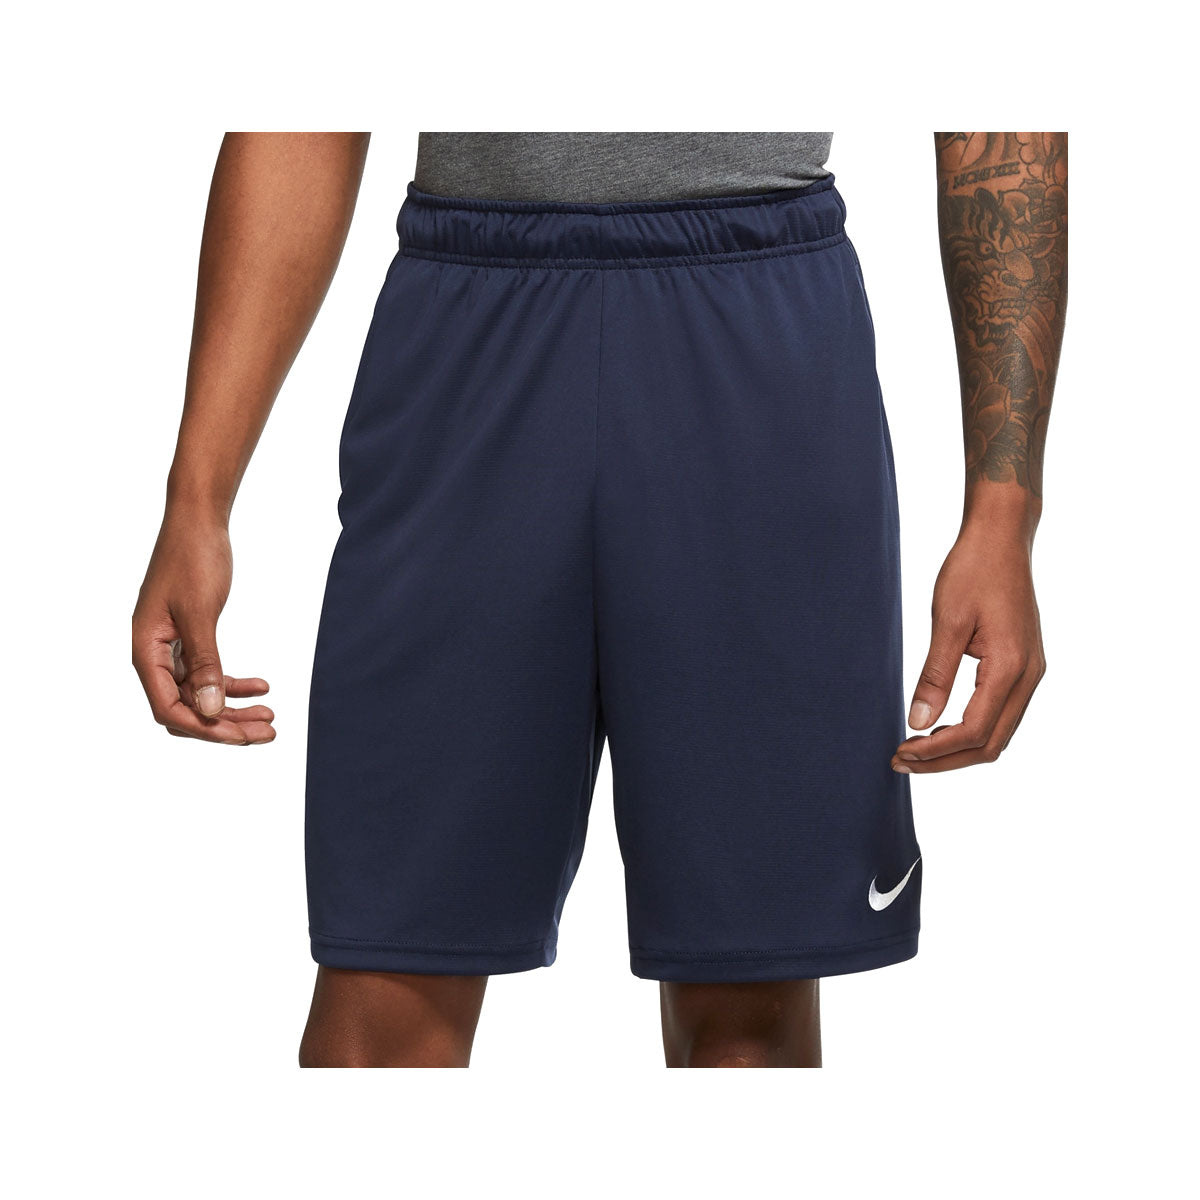 Nike Men's Dri-Fit Knit Training Shorts